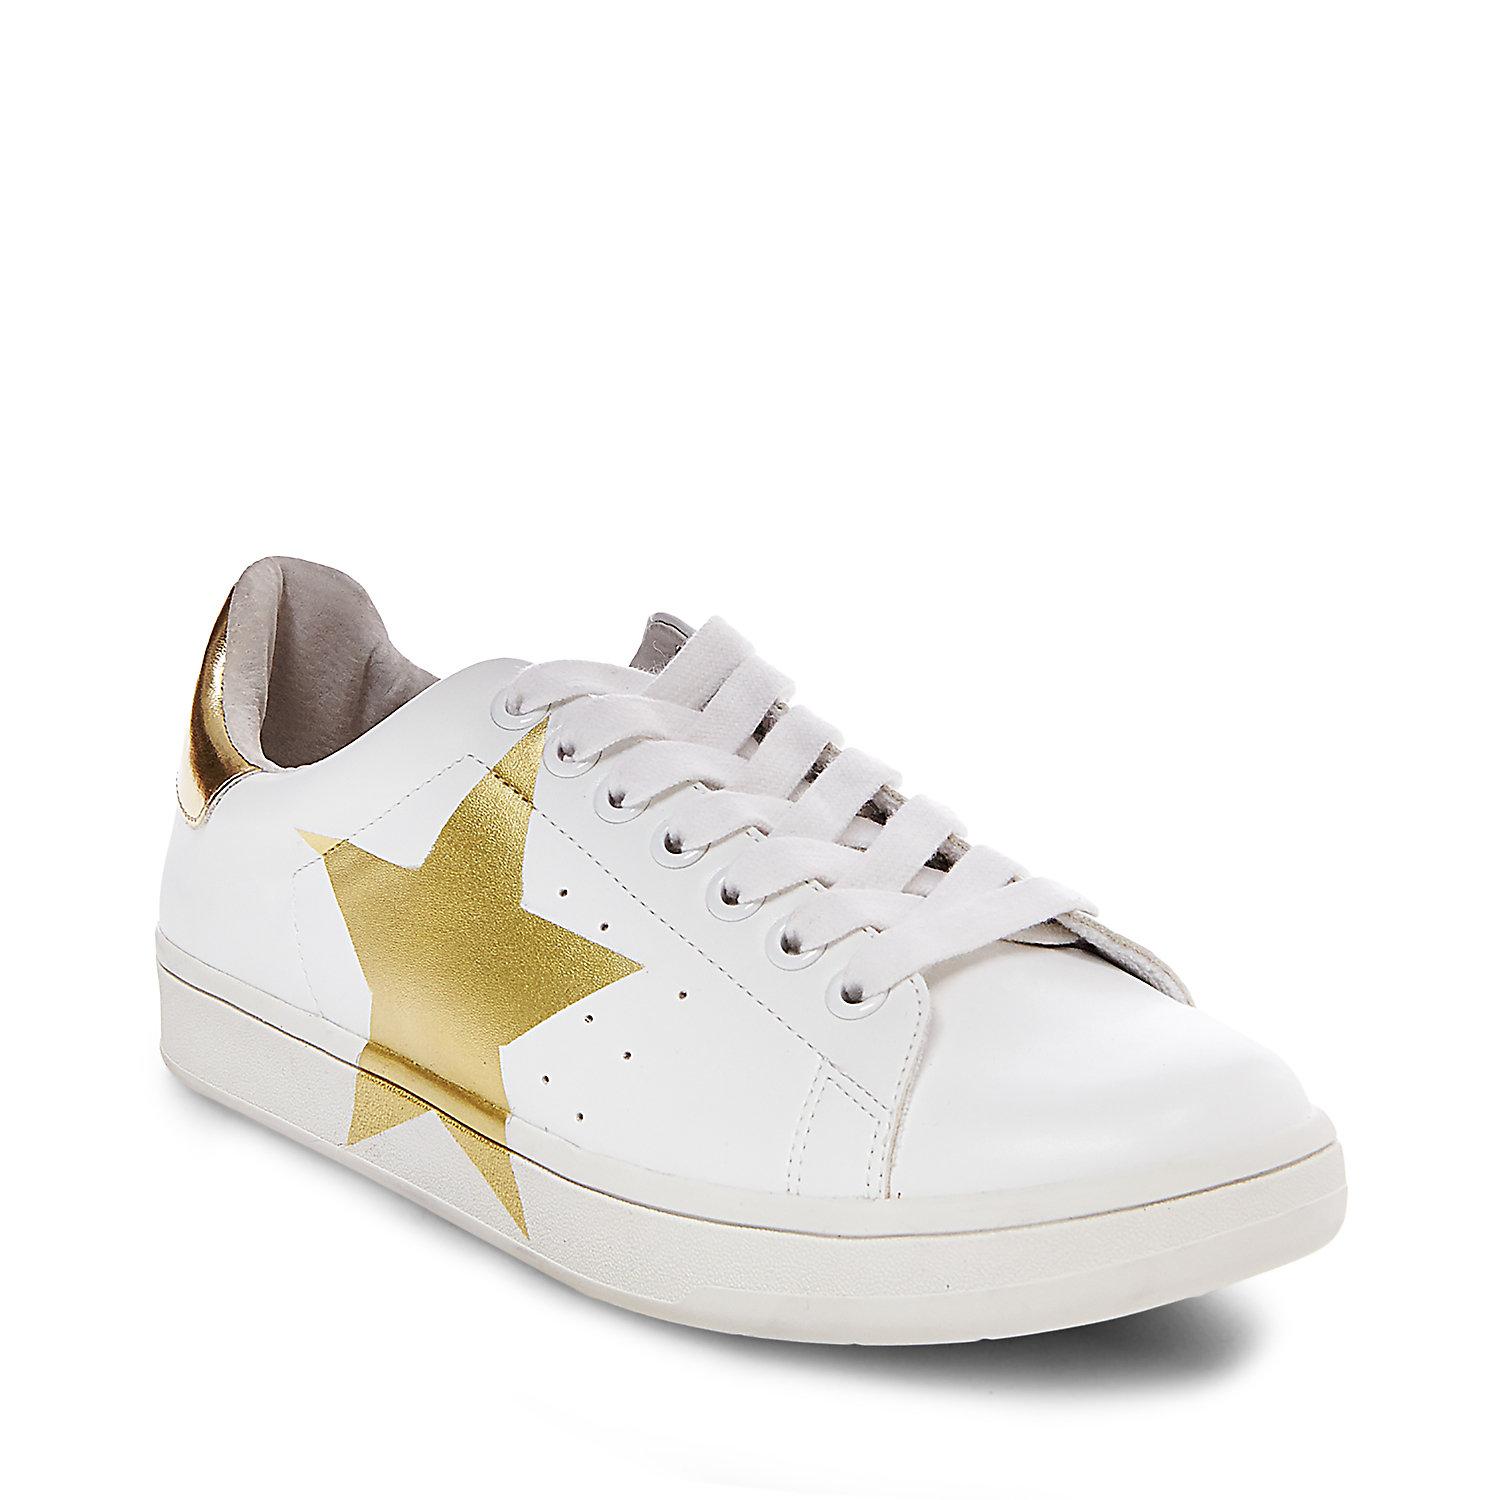 Steve Madden Rayner White And Gold Star Sneaker - Lyst